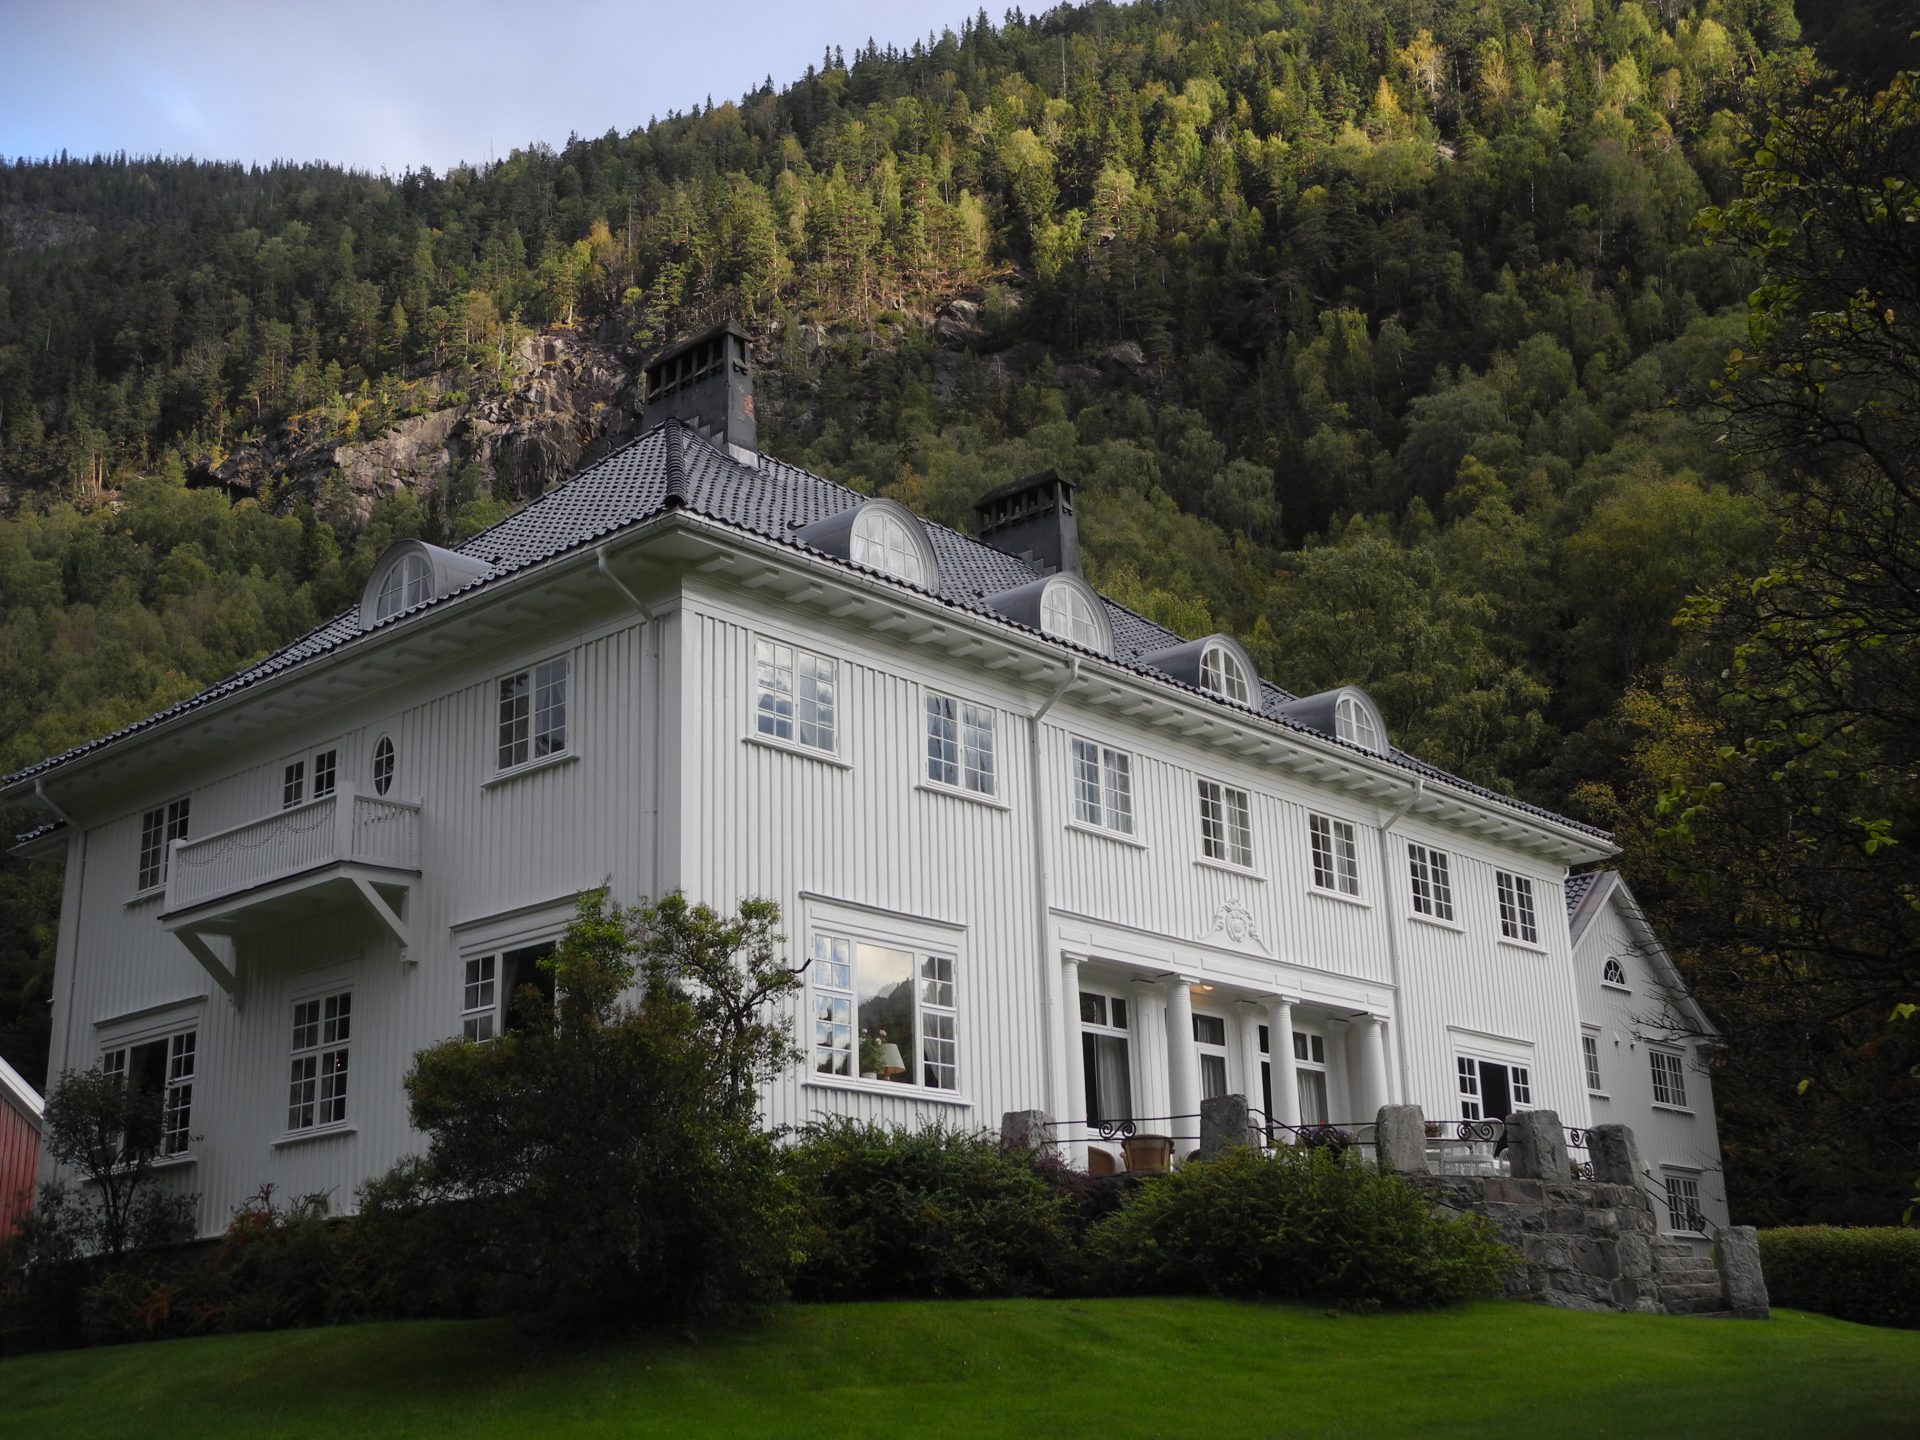 Admini in Rjukan. The main “Admini” building in Rjukan. Photo: Eva Eide, the Directorate for Cultural Heritage